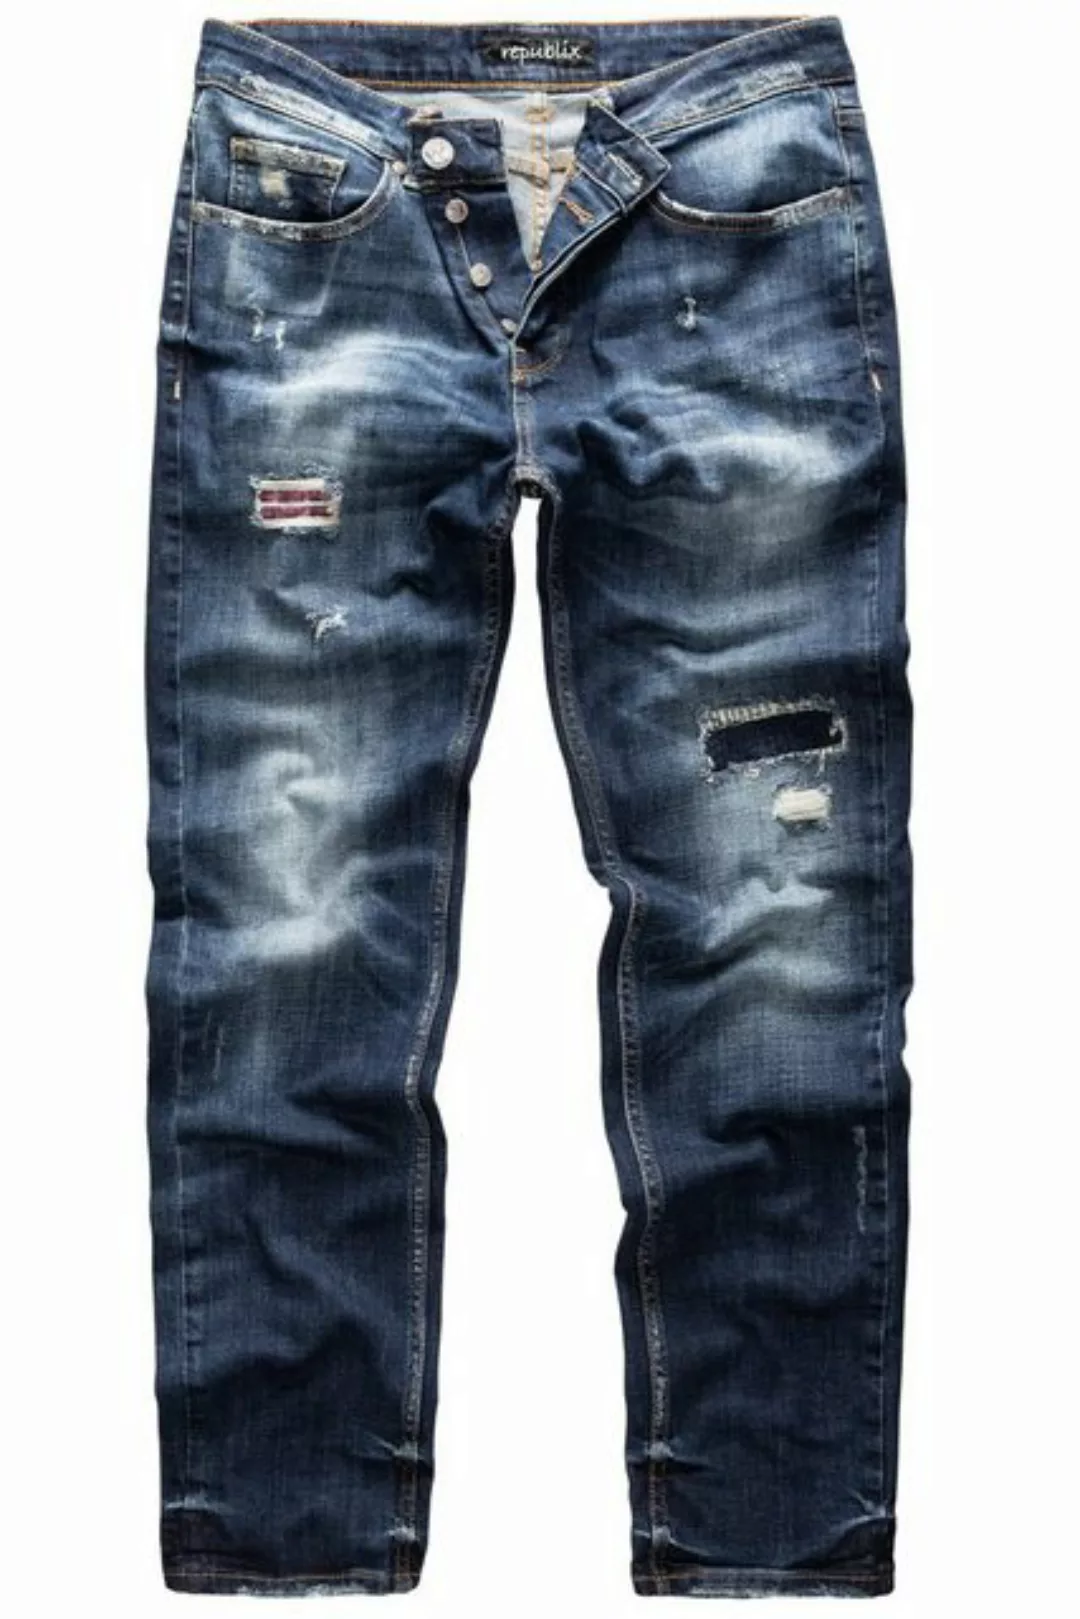 REPUBLIX Straight-Jeans CONNOR Herren Regular Fit Destroyed Jeans günstig online kaufen